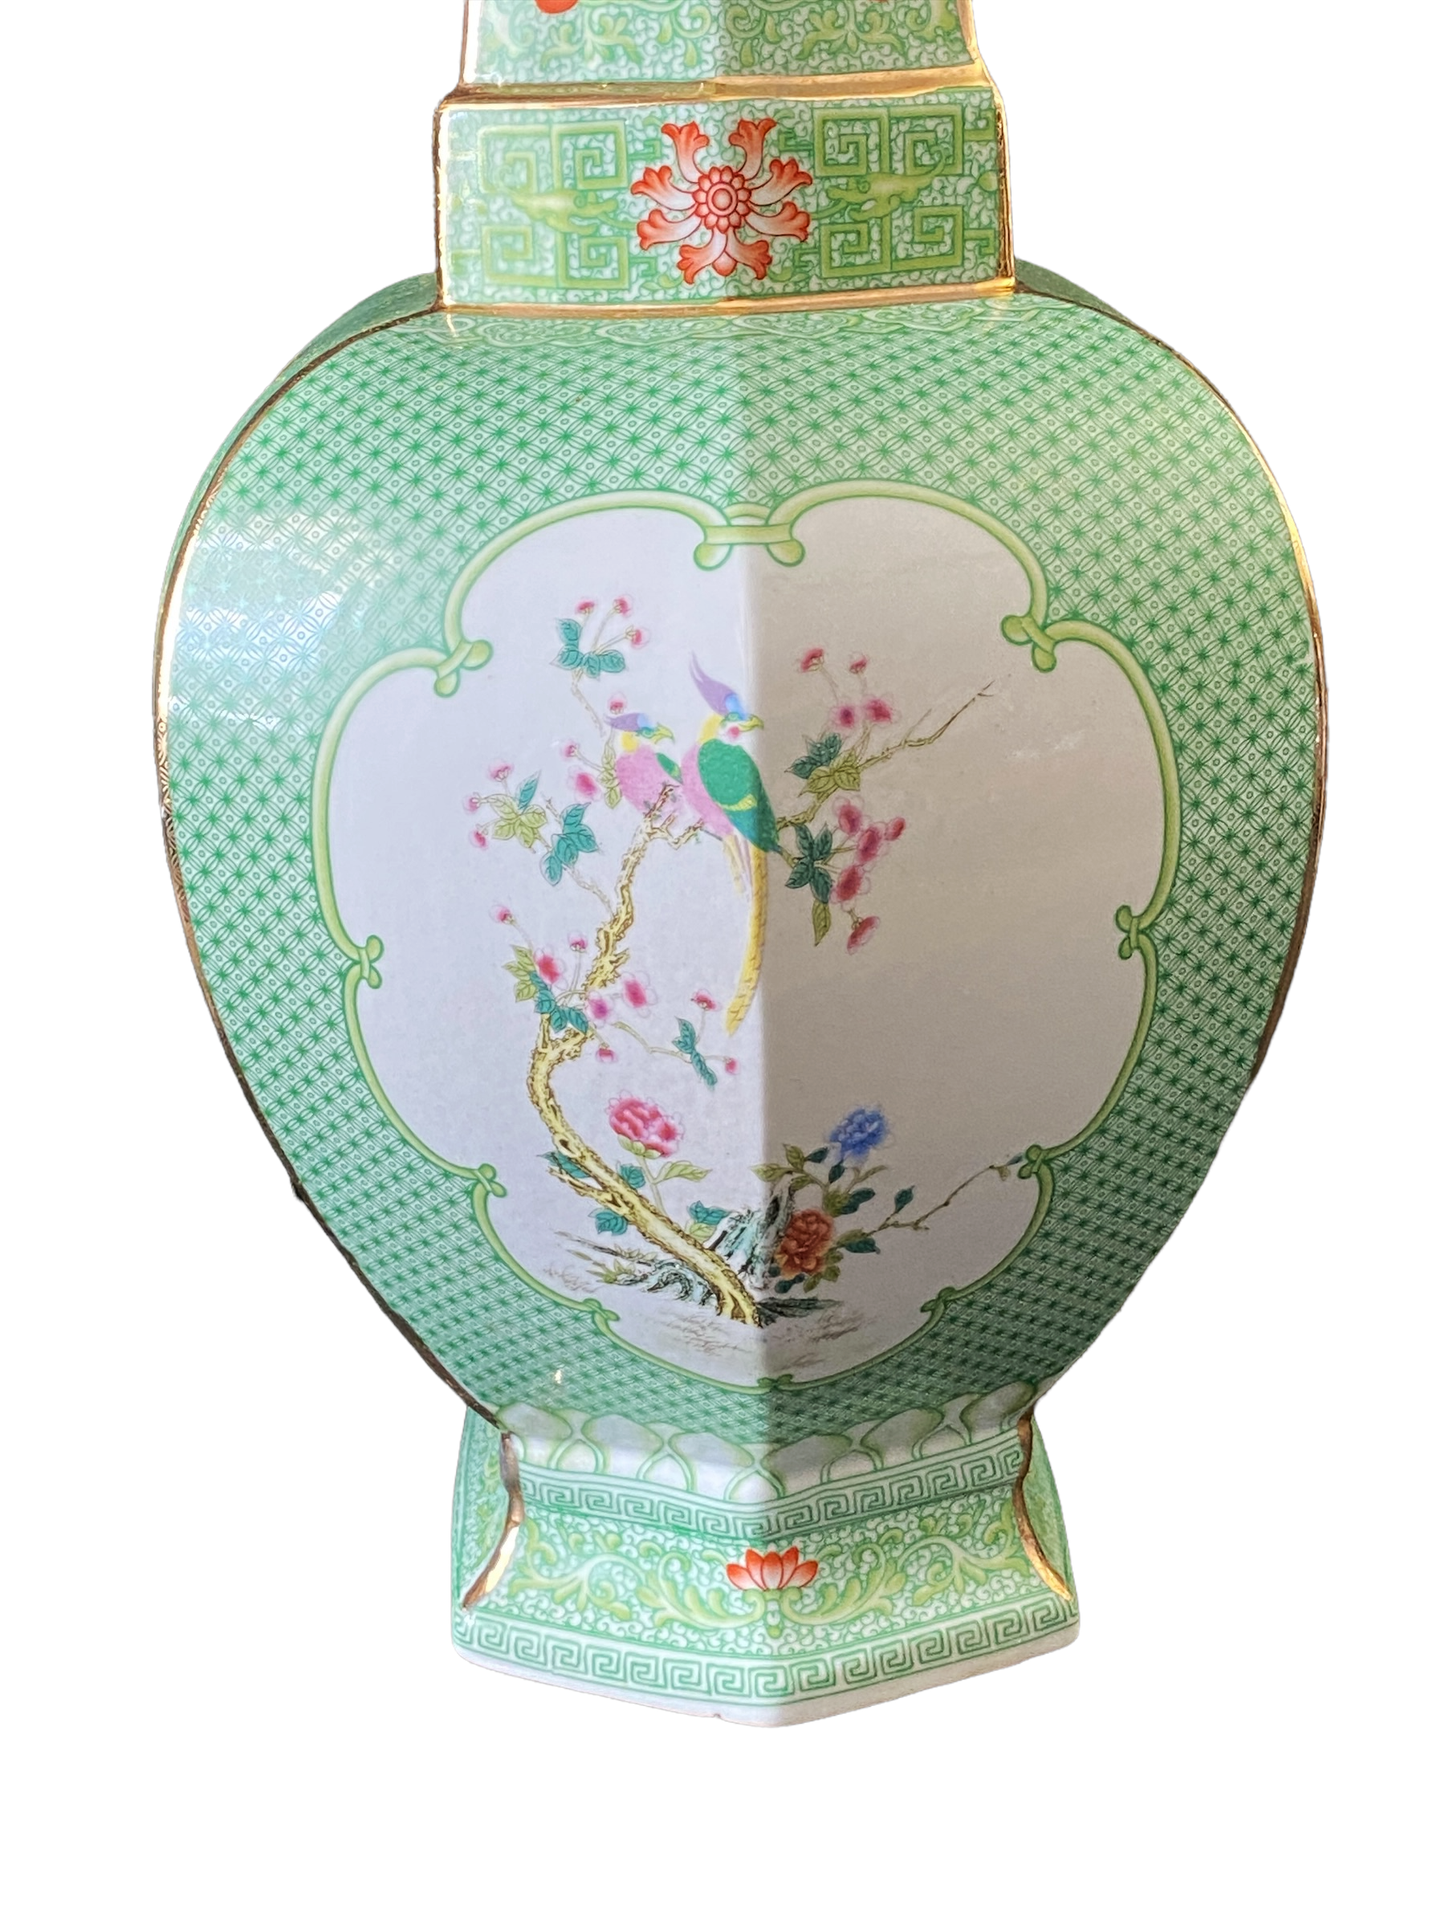 #3199 Chinoiserie Porcelain Famille Verte Style Vase 19.5" H